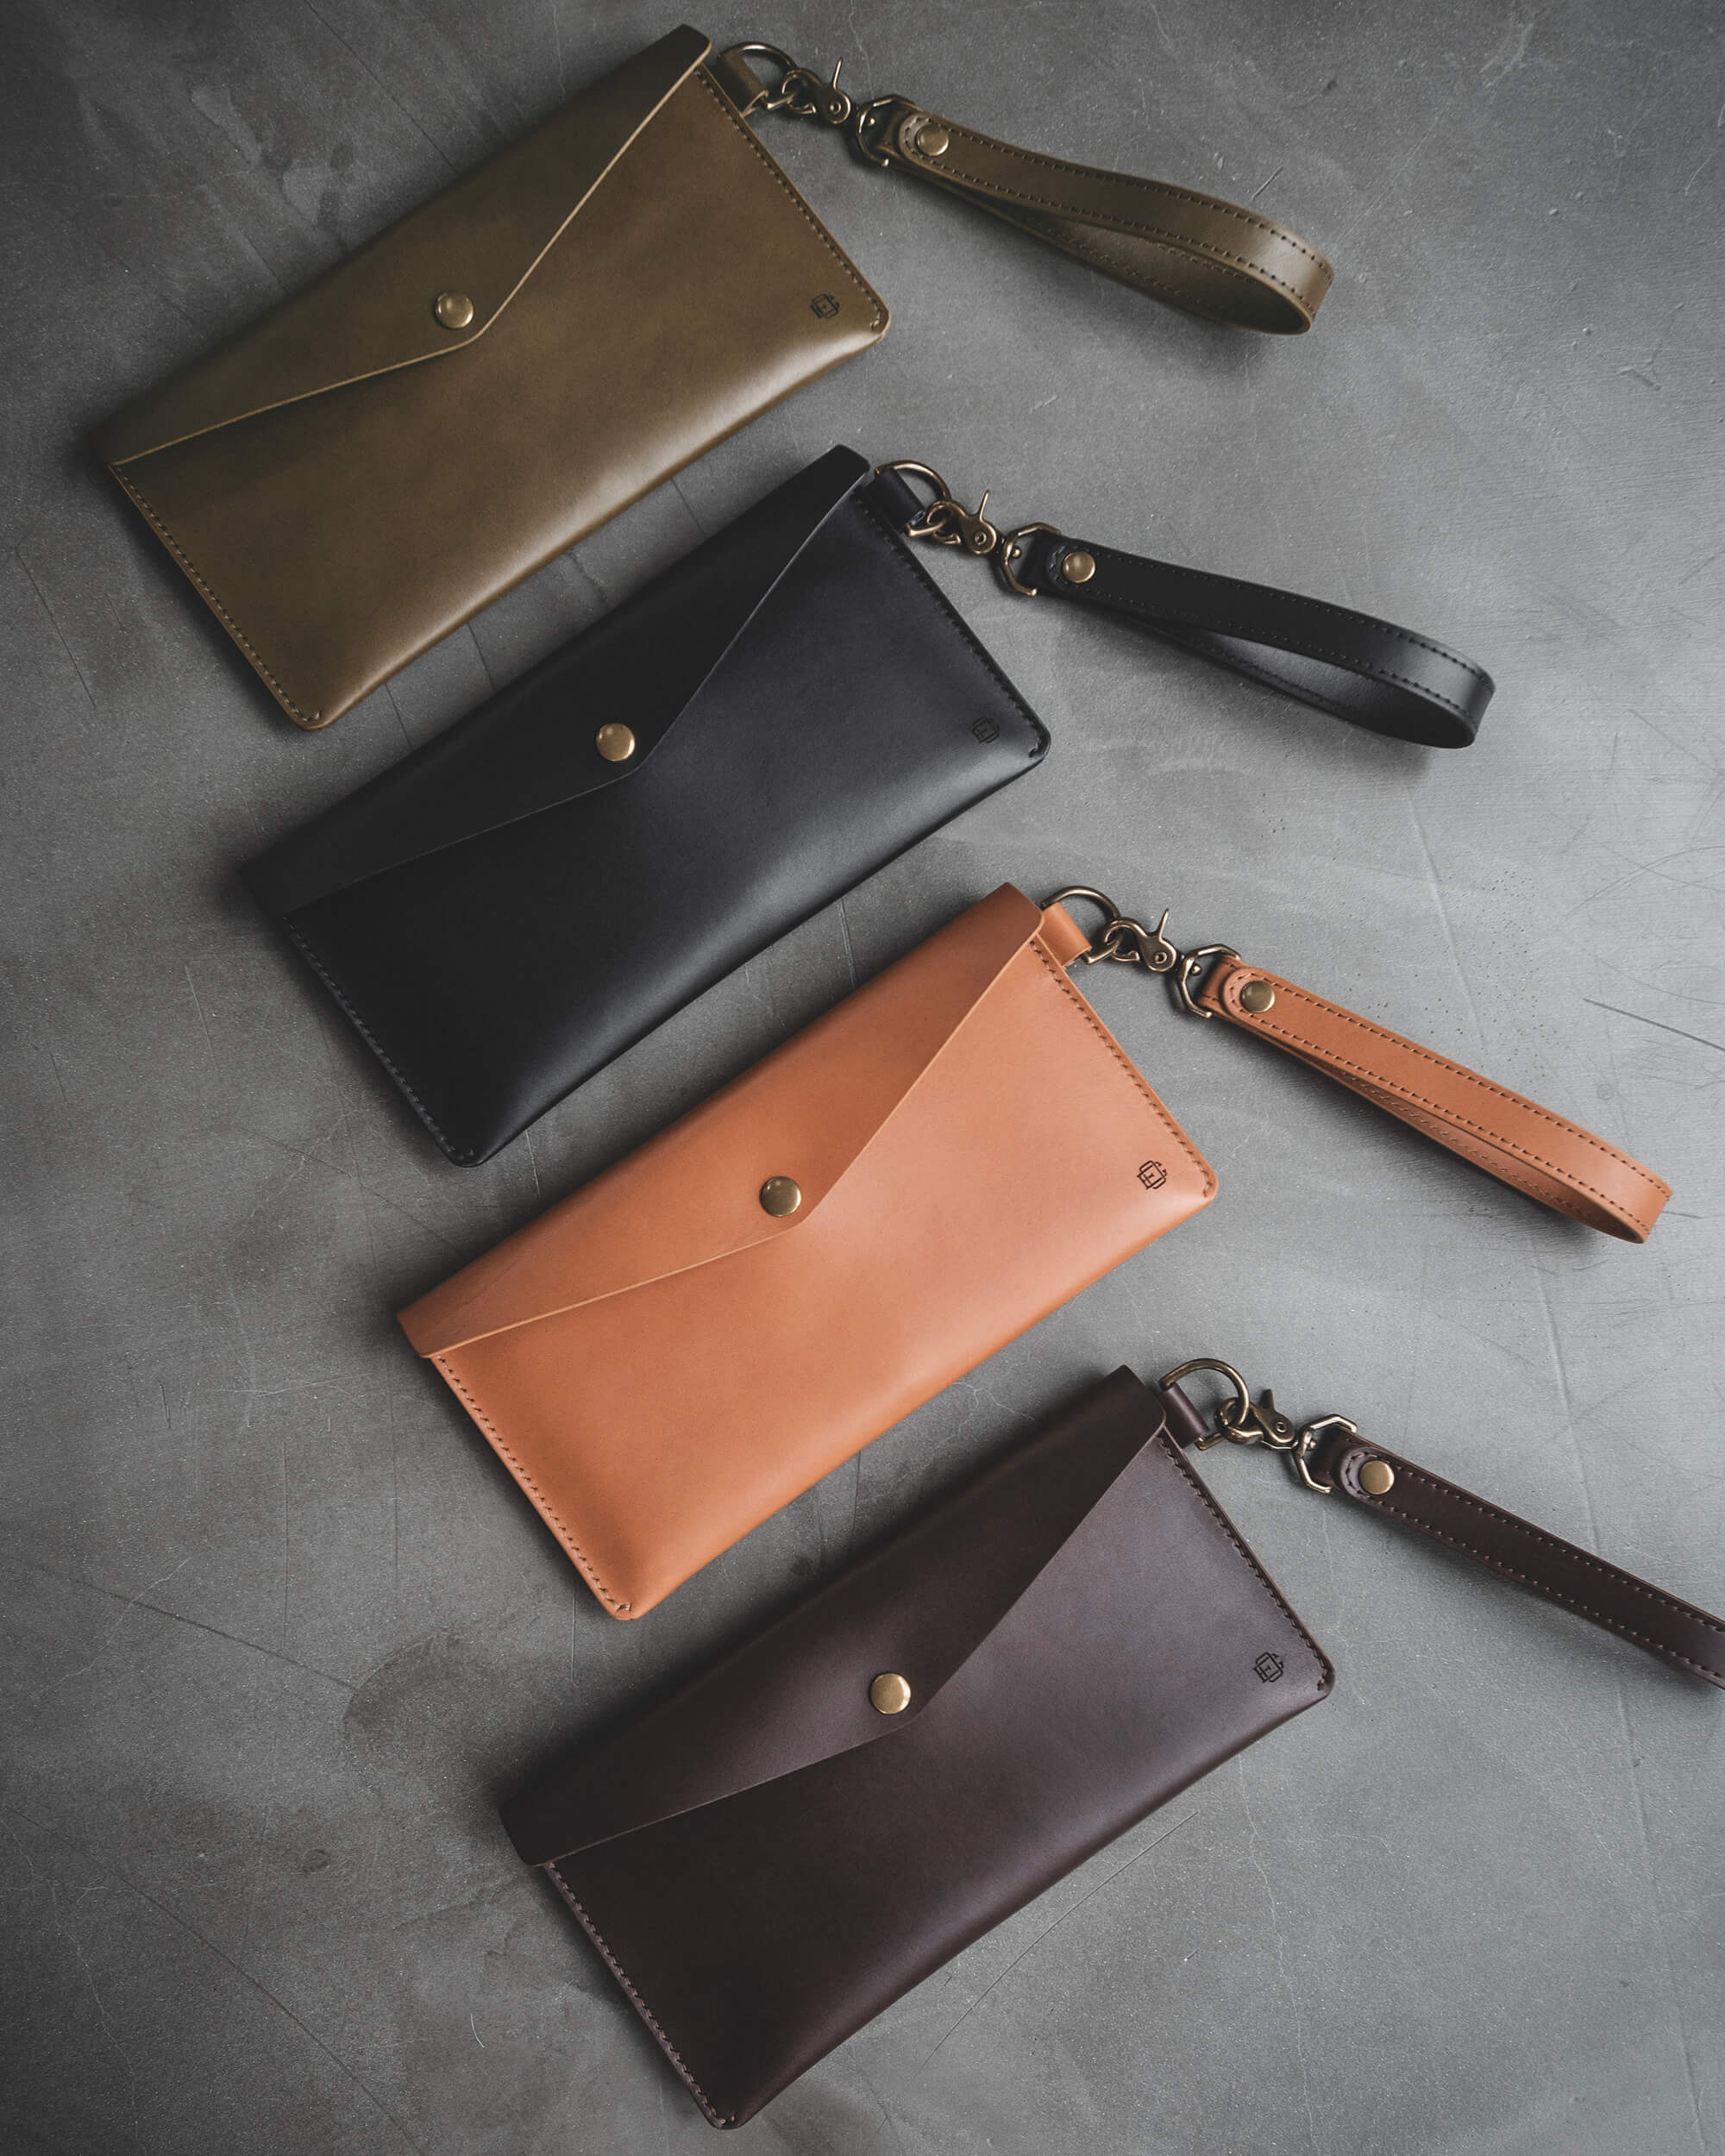 Leather Envelope Clutch - Dark Brown